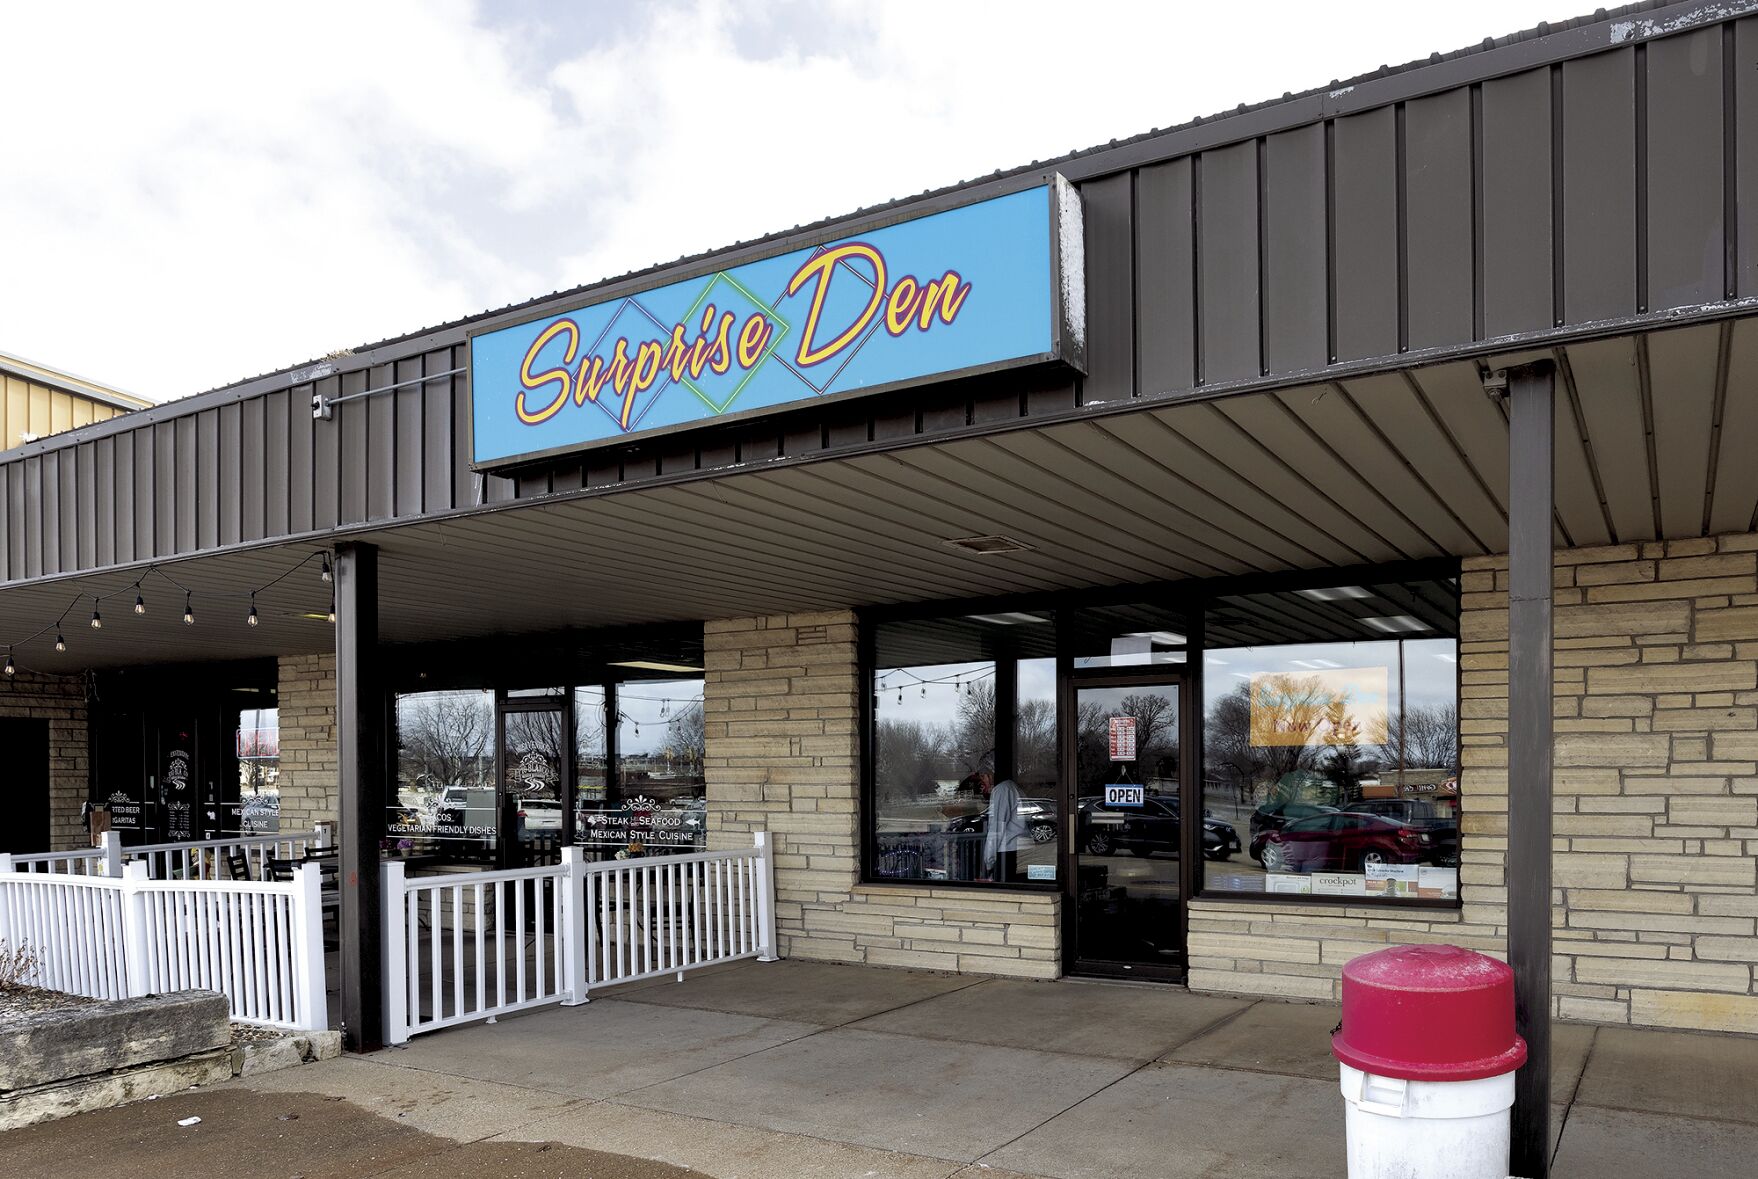 Exterior of Surprise Den in Dyersville, Iowa on Friday, March 17, 2023.    PHOTO CREDIT: Stephen Gassman